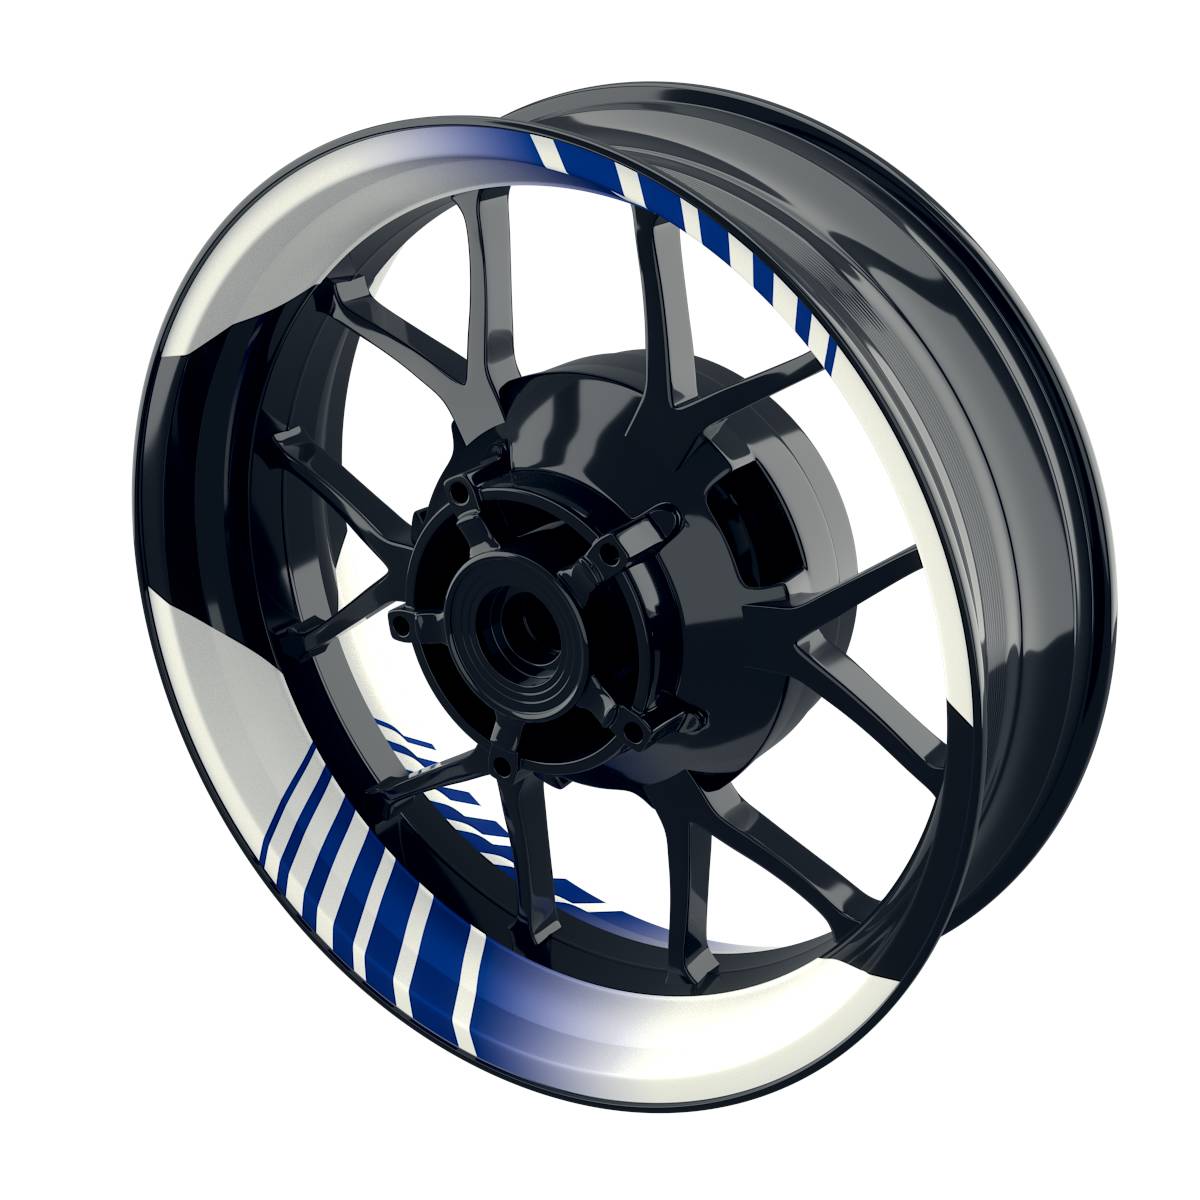 Hypnotic white Rim Decals Wheelsticker Premium splitted